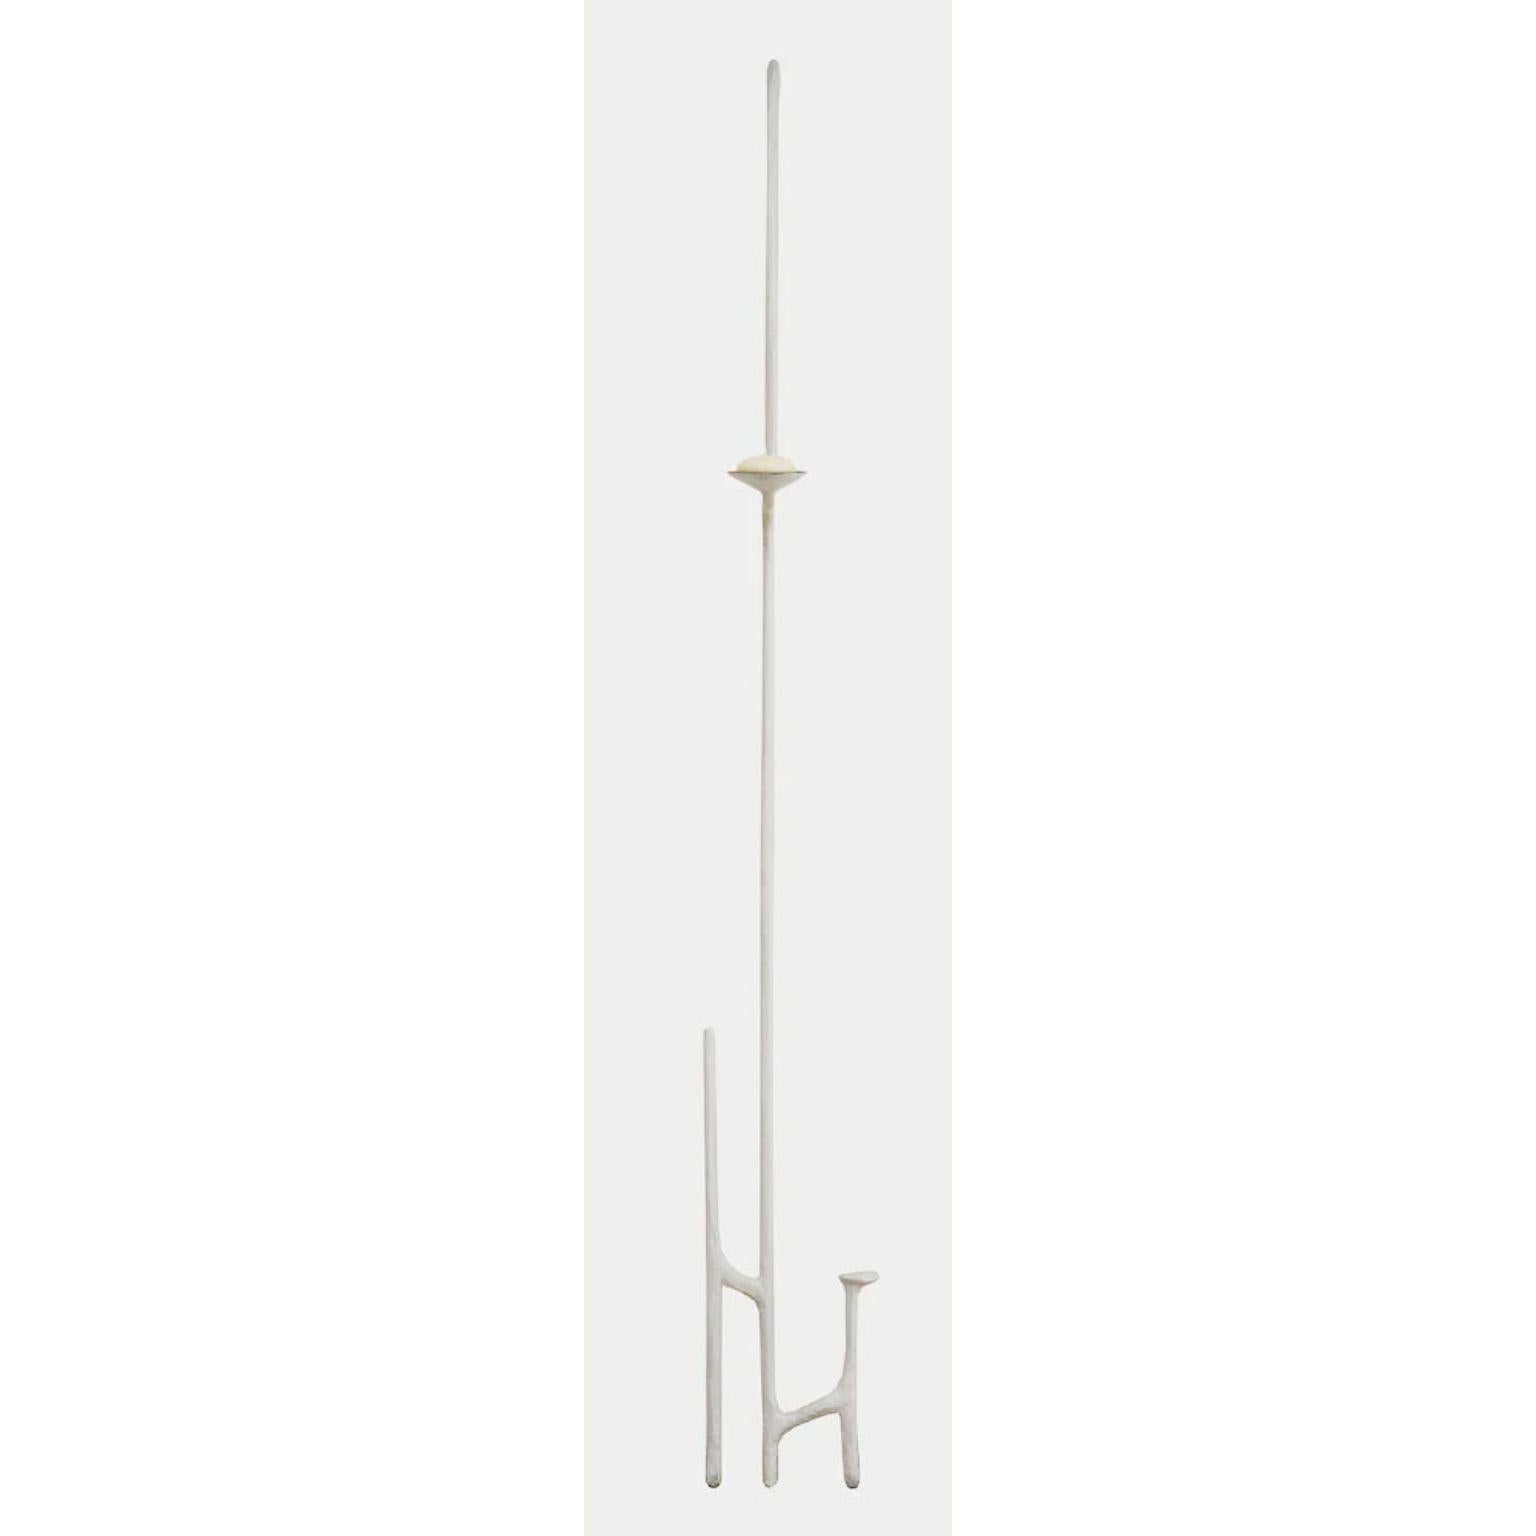 Giacomettis schräger Kerzenleuchter aus Weißbronze von Mary Brōgger
Abmessungen: B 33 cm x T 5 cm x H 196 cm.
MATERIAL: weiß patinierte Bronze.
Auch in anderen Ausführungen und Abmessungen erhältlich.

Mary Brōgger ist eine international anerkannte